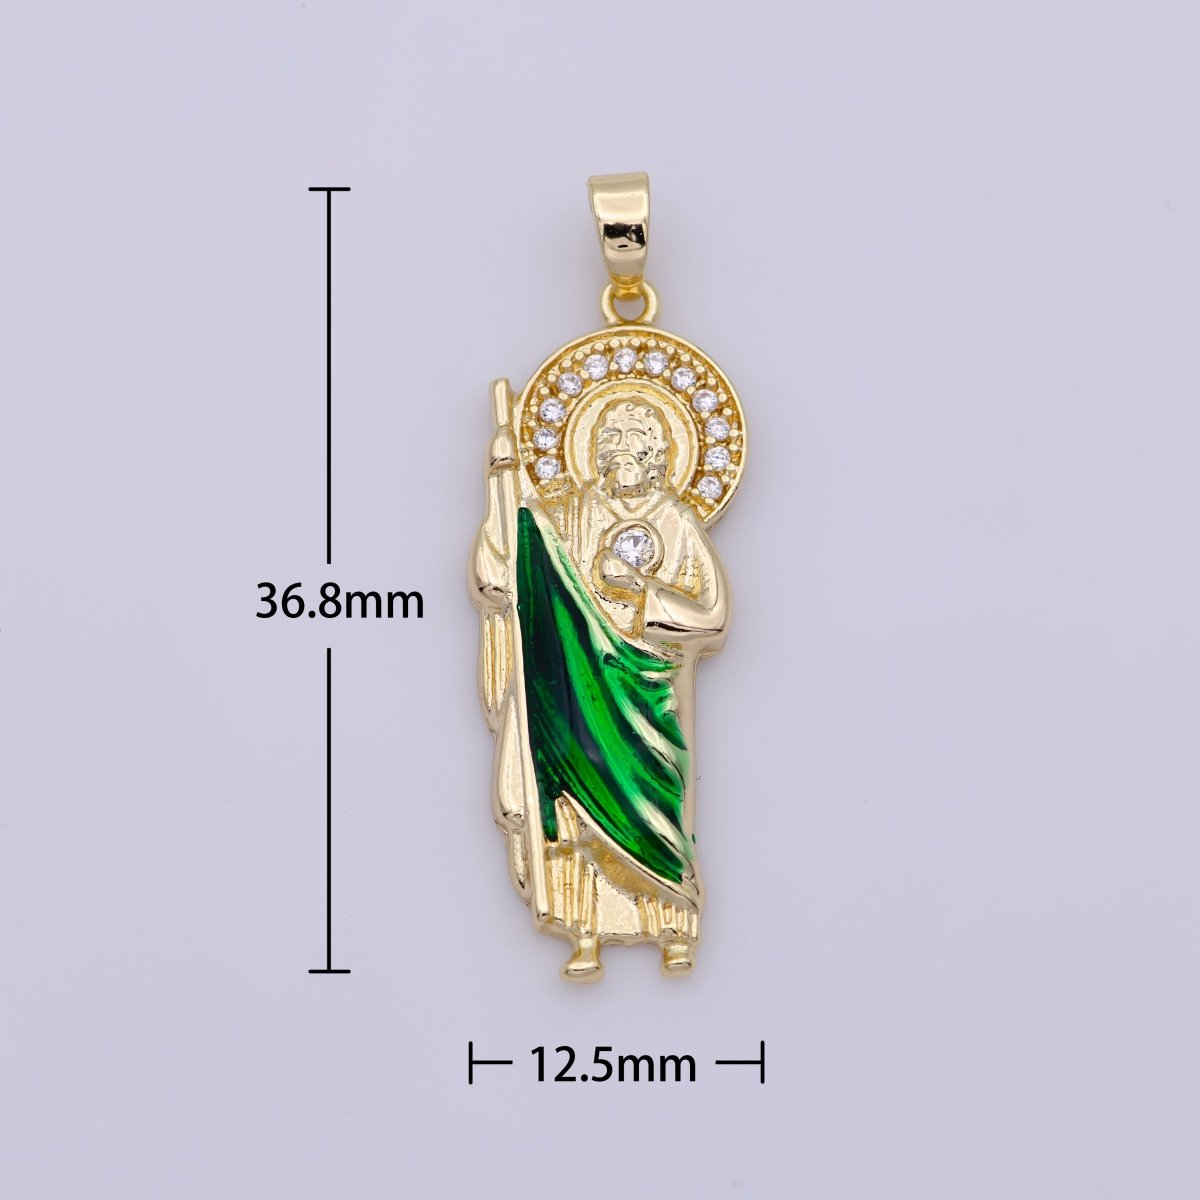 OS Micro Paved Gold Filled Saint San Judas Religious Pendant | N-1333 - DLUXCA